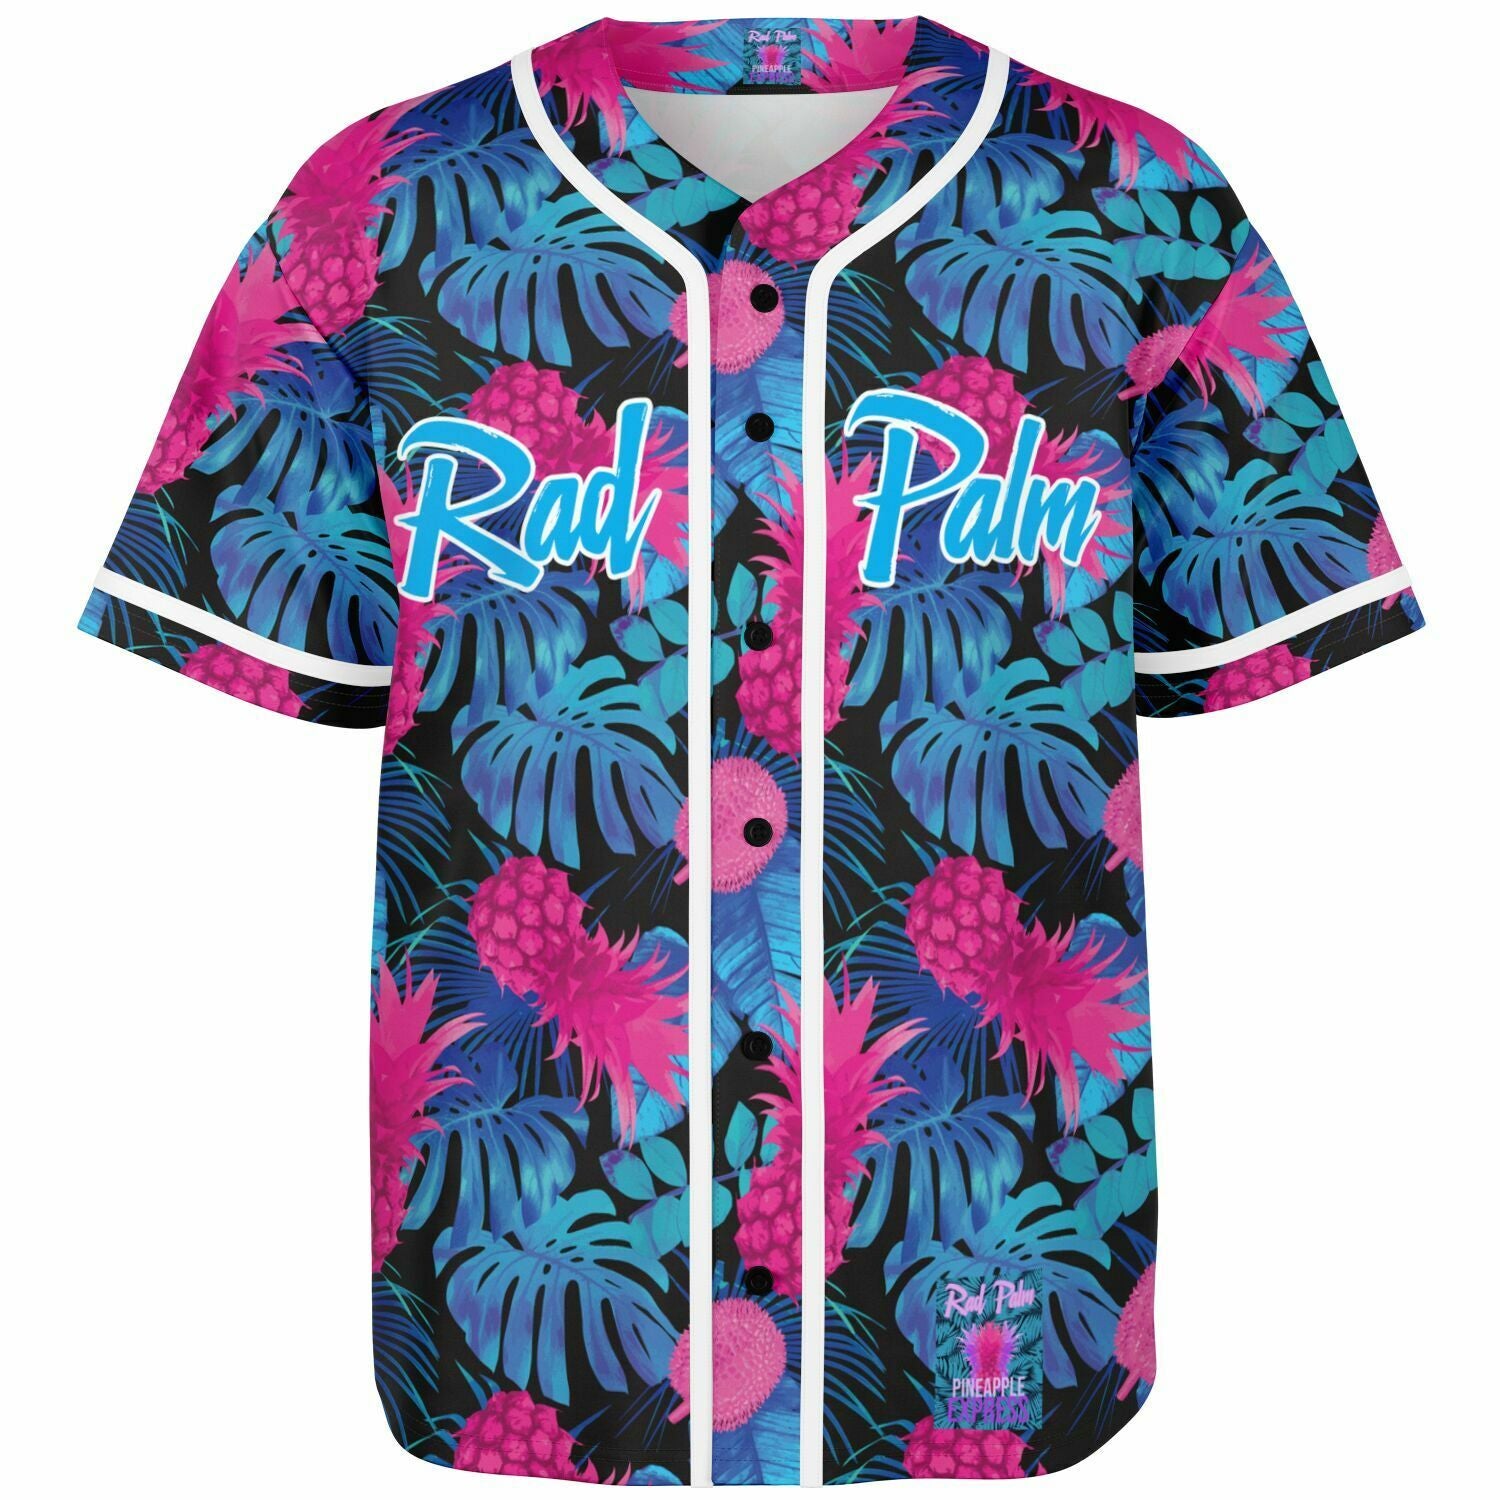 Rad Palm Pineapple Express Baseball Jersey